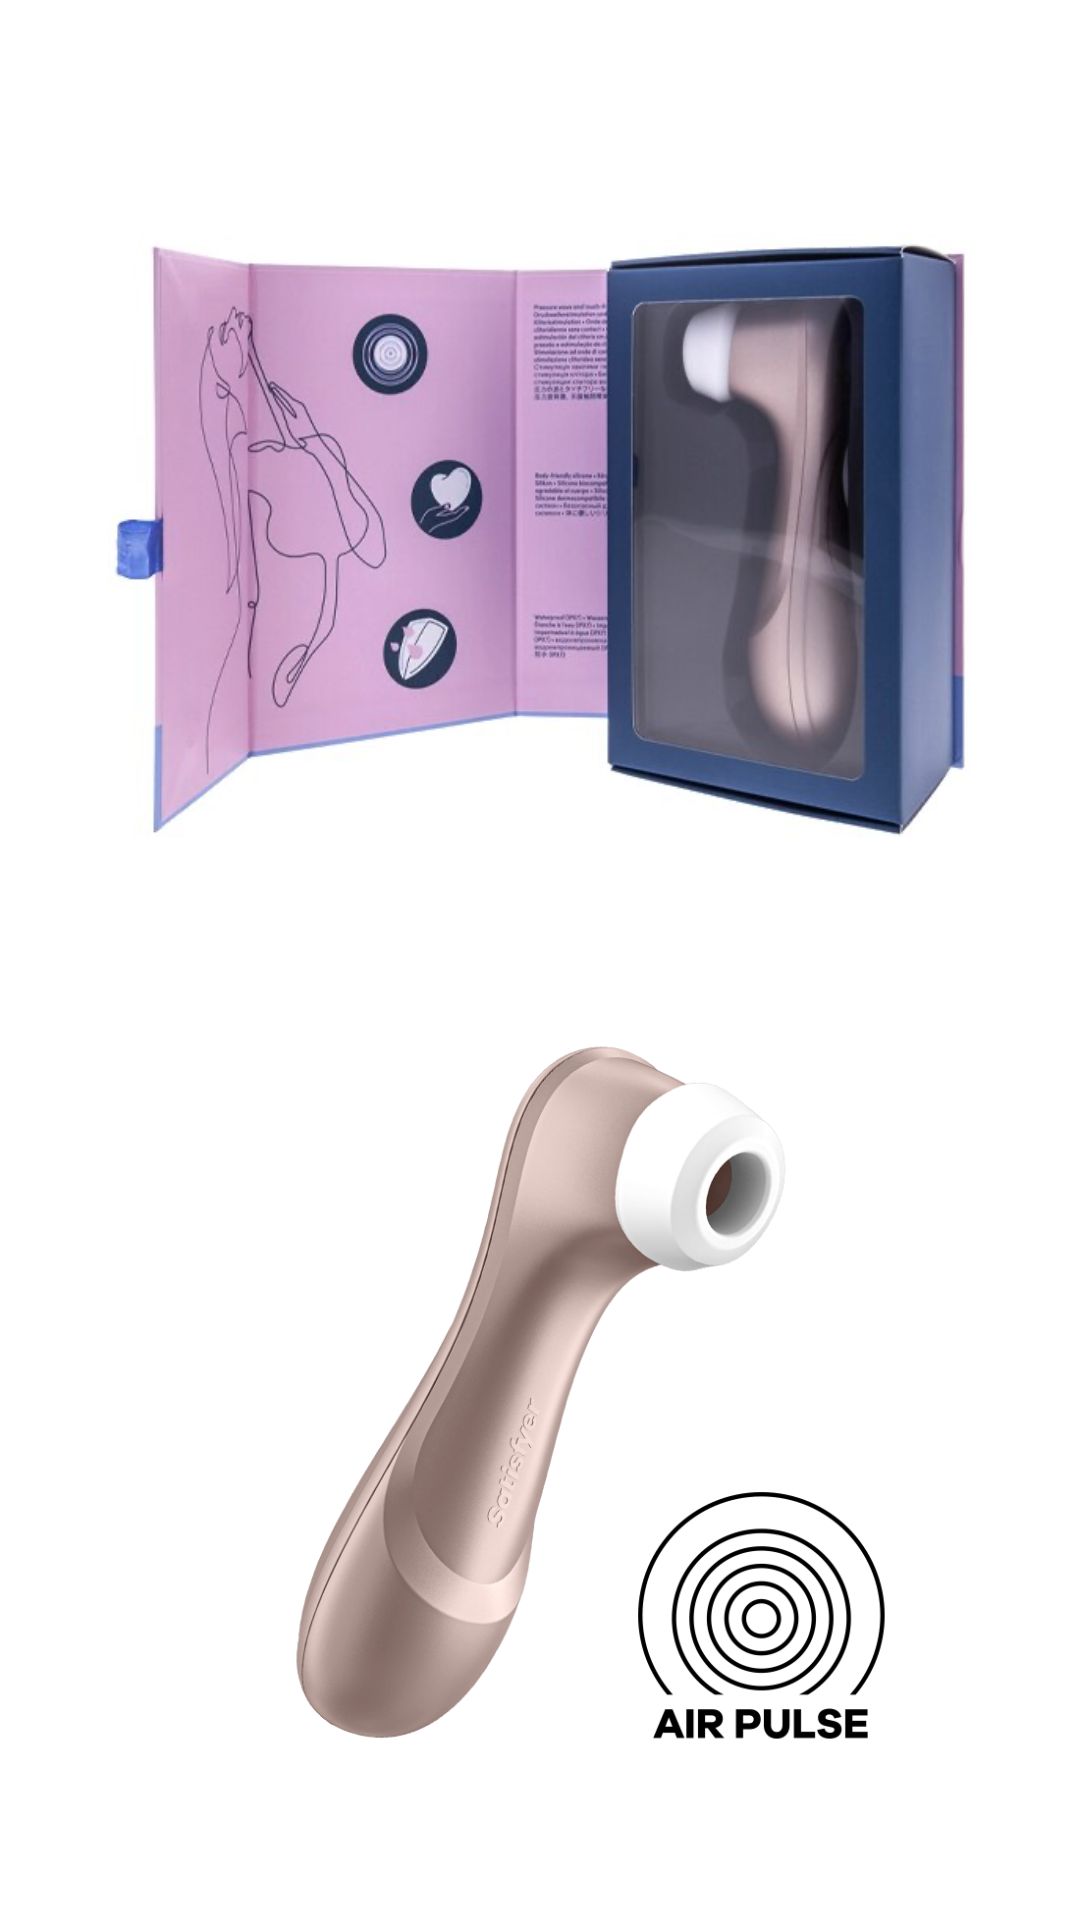 Klitorio stimuliatorius „Satisfyer Pro 2'' 
 
"Pro 2" įdiegta naujoviška ,,Airpulse" technologija, kuri švelniai arba intensyviai stimuliuoja klitorį vakuuminių bangų pagalba. Jaudinanti pulsacija jau spėjo užkariauti milijonų klientų širdis. Geriausiai parduodamas, ergonomiškos formos sekso žaislas suteiks jums sprogstantį orgazmą ir niekada neleis nuobodžiauti. Palaikyti savo seksualinę sveikatą dar niekada nebuvo taip paprasta. 
,,Pro 2" stebina  galingu varikliu , ergonomiška forma ir tyliu veikimu. Pasiduokite savo fantazijoms ir mėgaukitės klitoriniu stimuliatoriumi be jokio pašalinio triukšmo. Stimuliatorius yra  atsparus vandeniui  (IPX7), todėl malonumais galėsite mėgautis net duše ar vonioje.  Po vandeniu jo galinga bangų stimuliacija yra daug stipresnė. Jei žaislas išsikraus - bateriją galima įkrauti naudojant pridedamą USB laidą. 
Tinkamai prižiūrint šis stimuliatorius tarnaus jums ilgai. Prieš ir po kiekvieno naudojimo nuplaukite jį šiltu vandeniu ir švelniu muilu arba  specialiu žaislų valikliu . Leiskite išdžiūti natūraliai. Šį sekso žaislą laikykite stalčiuje, specialiame maišelyje arba kitoje vietoje, kurioje nėra dulkių. Laikykite jį atokiau nuo kitų sekso žaislų. Nepalikite tiesioginiuose saulės spinduliuose ir niekada nelaikykite jo dideliame karštyje. 
Rekomenduojama naudoti kartu su  vandens pagrindo lubrikantu . Nenaudokite silikoninių lubrikantų, aliejų ar kremų, nes jie gali sugadinti prietaiso medžiagą ir apriboti jo veikimą bei galiojimo laiką.  
 